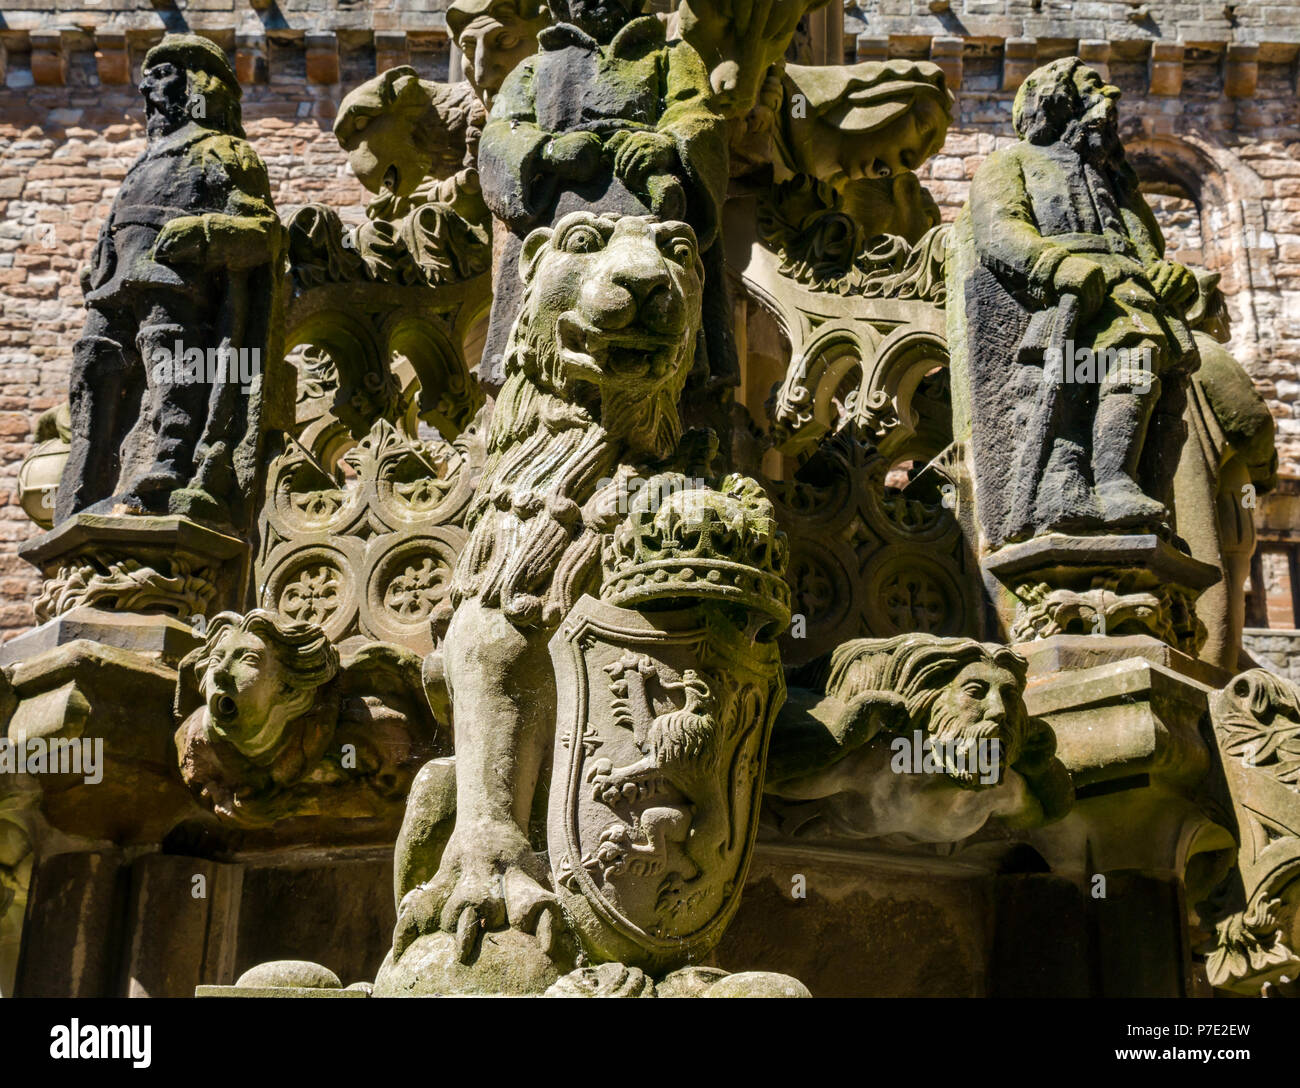 Dettaglio di indossato scolpiti leone rampante e figure, ornata fontana di pietra nel cortile centrale, Linlithgow Palace, West Lothian, Scozia, Regno Unito Foto Stock